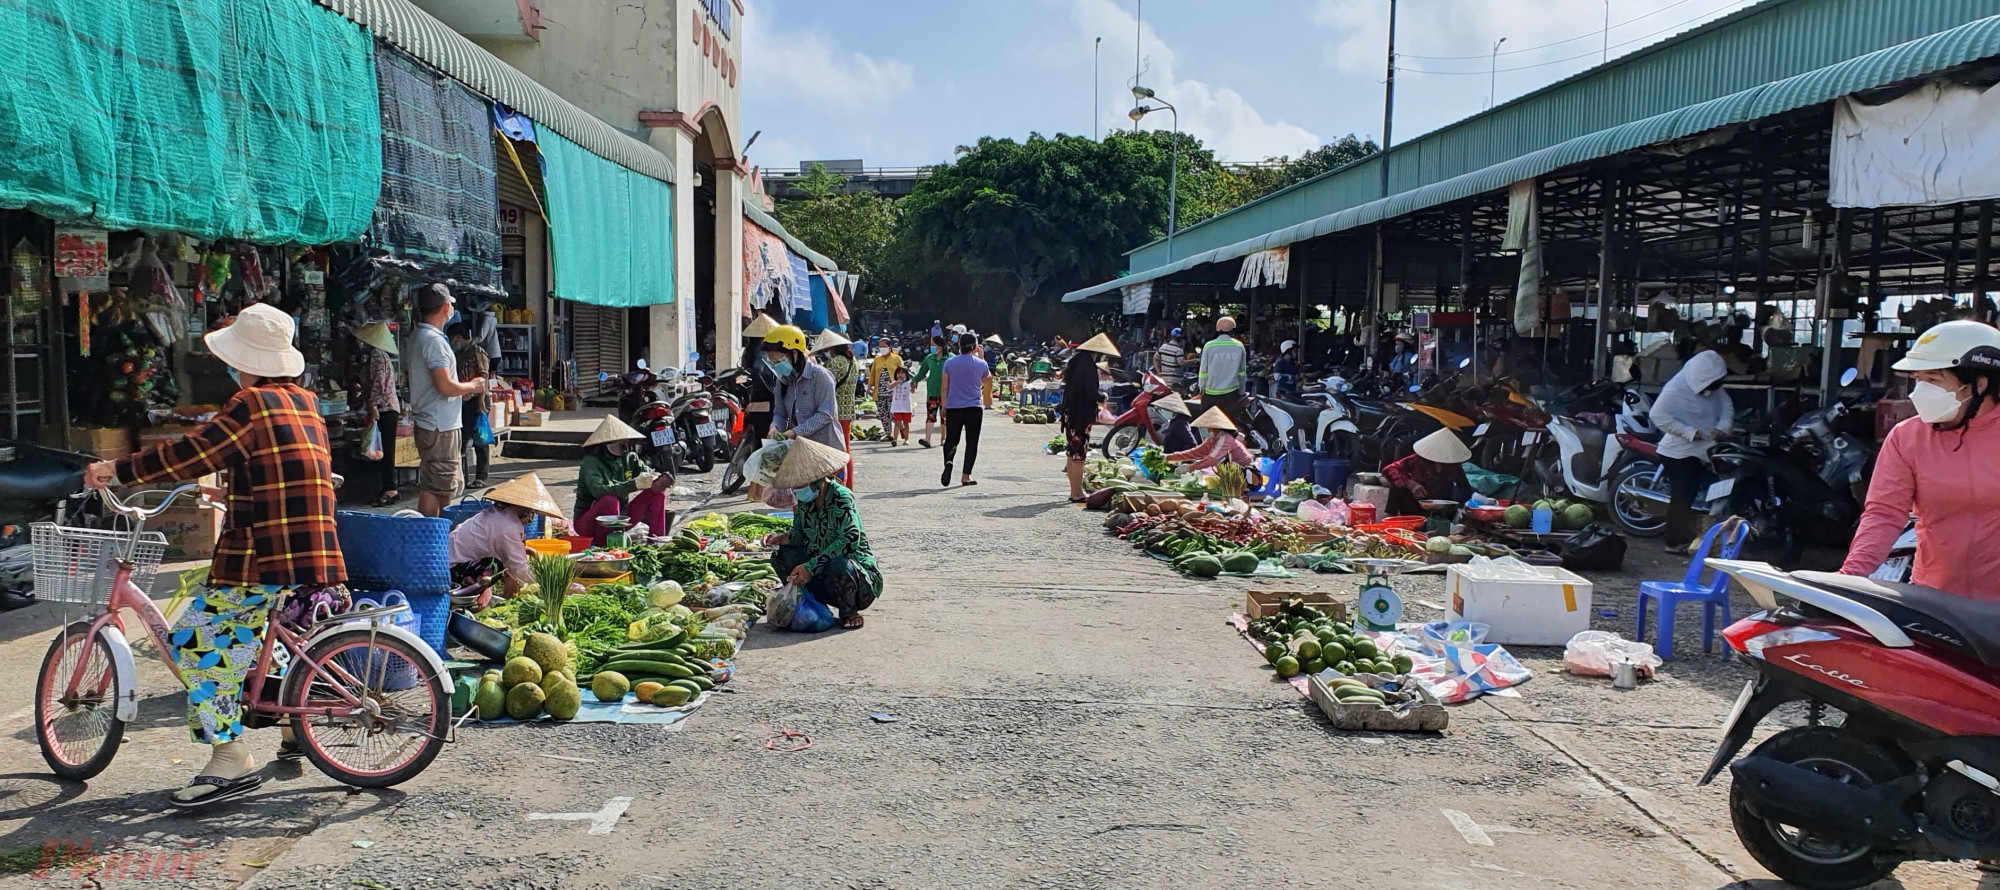 Người dân bán hàng nông sản tại chợ An Bình, quận Ninh Kiều, TP Cần Thơ trong ngày 23-10.